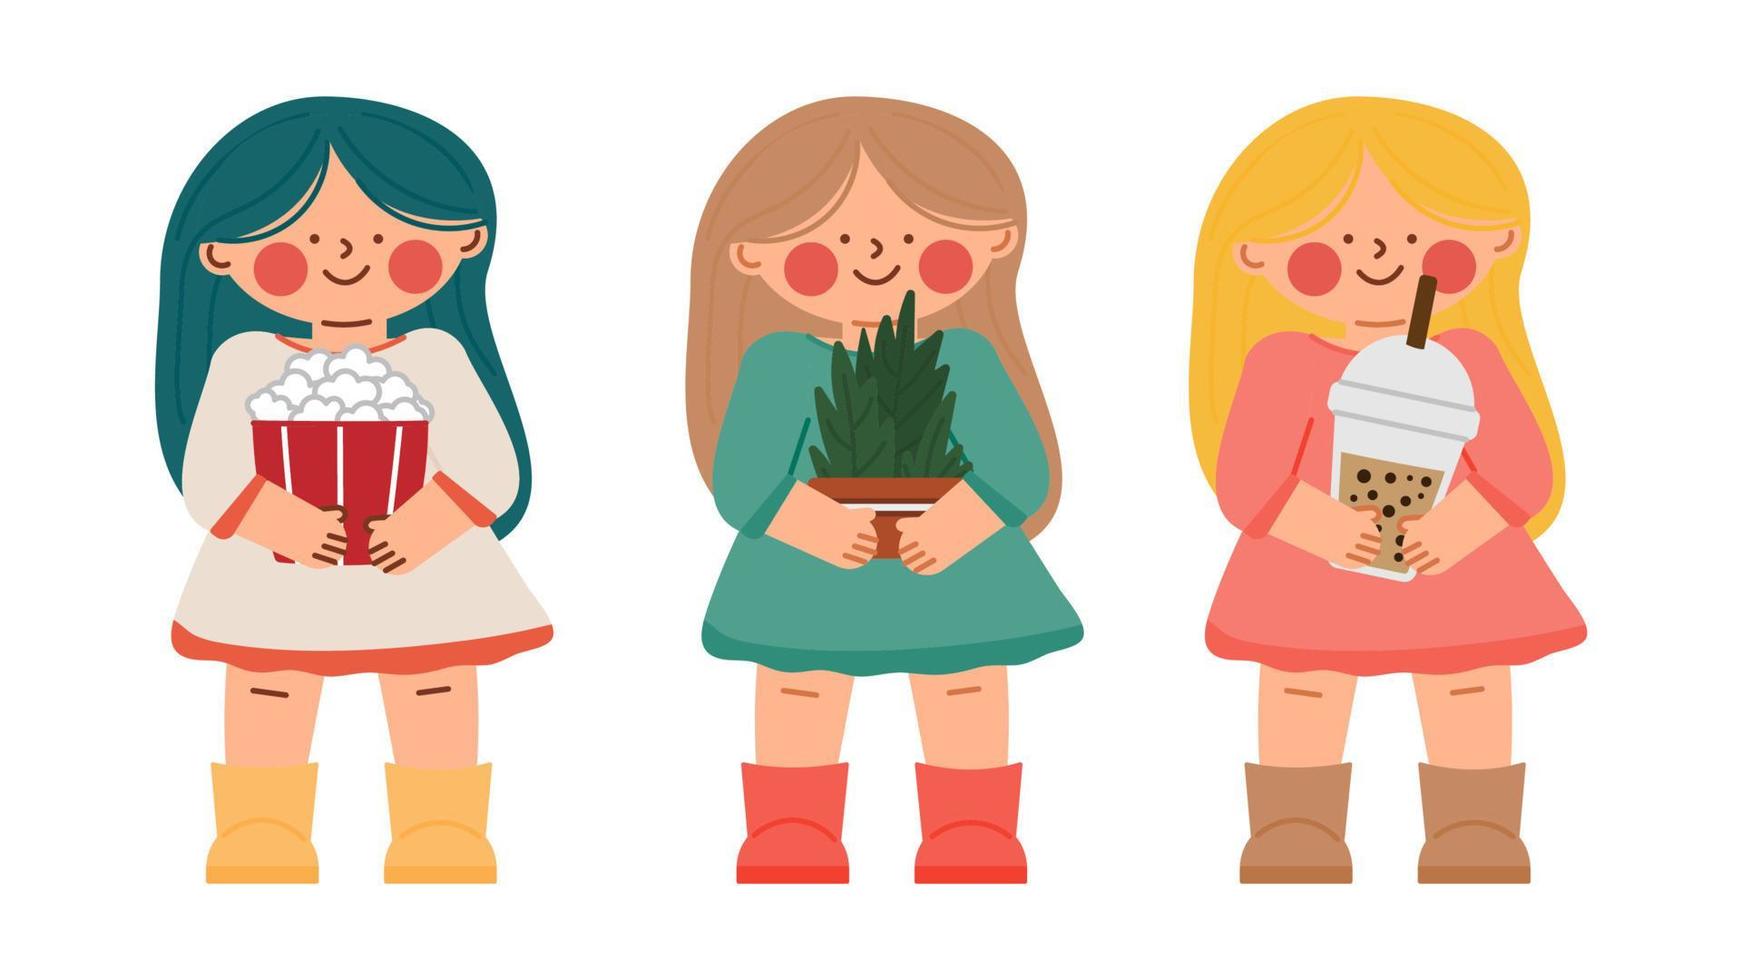 små roliga karaktär tonårsflickor med växter i en kruka med en drink och popcorn står och ler. vektor illustration i tecknad stil.